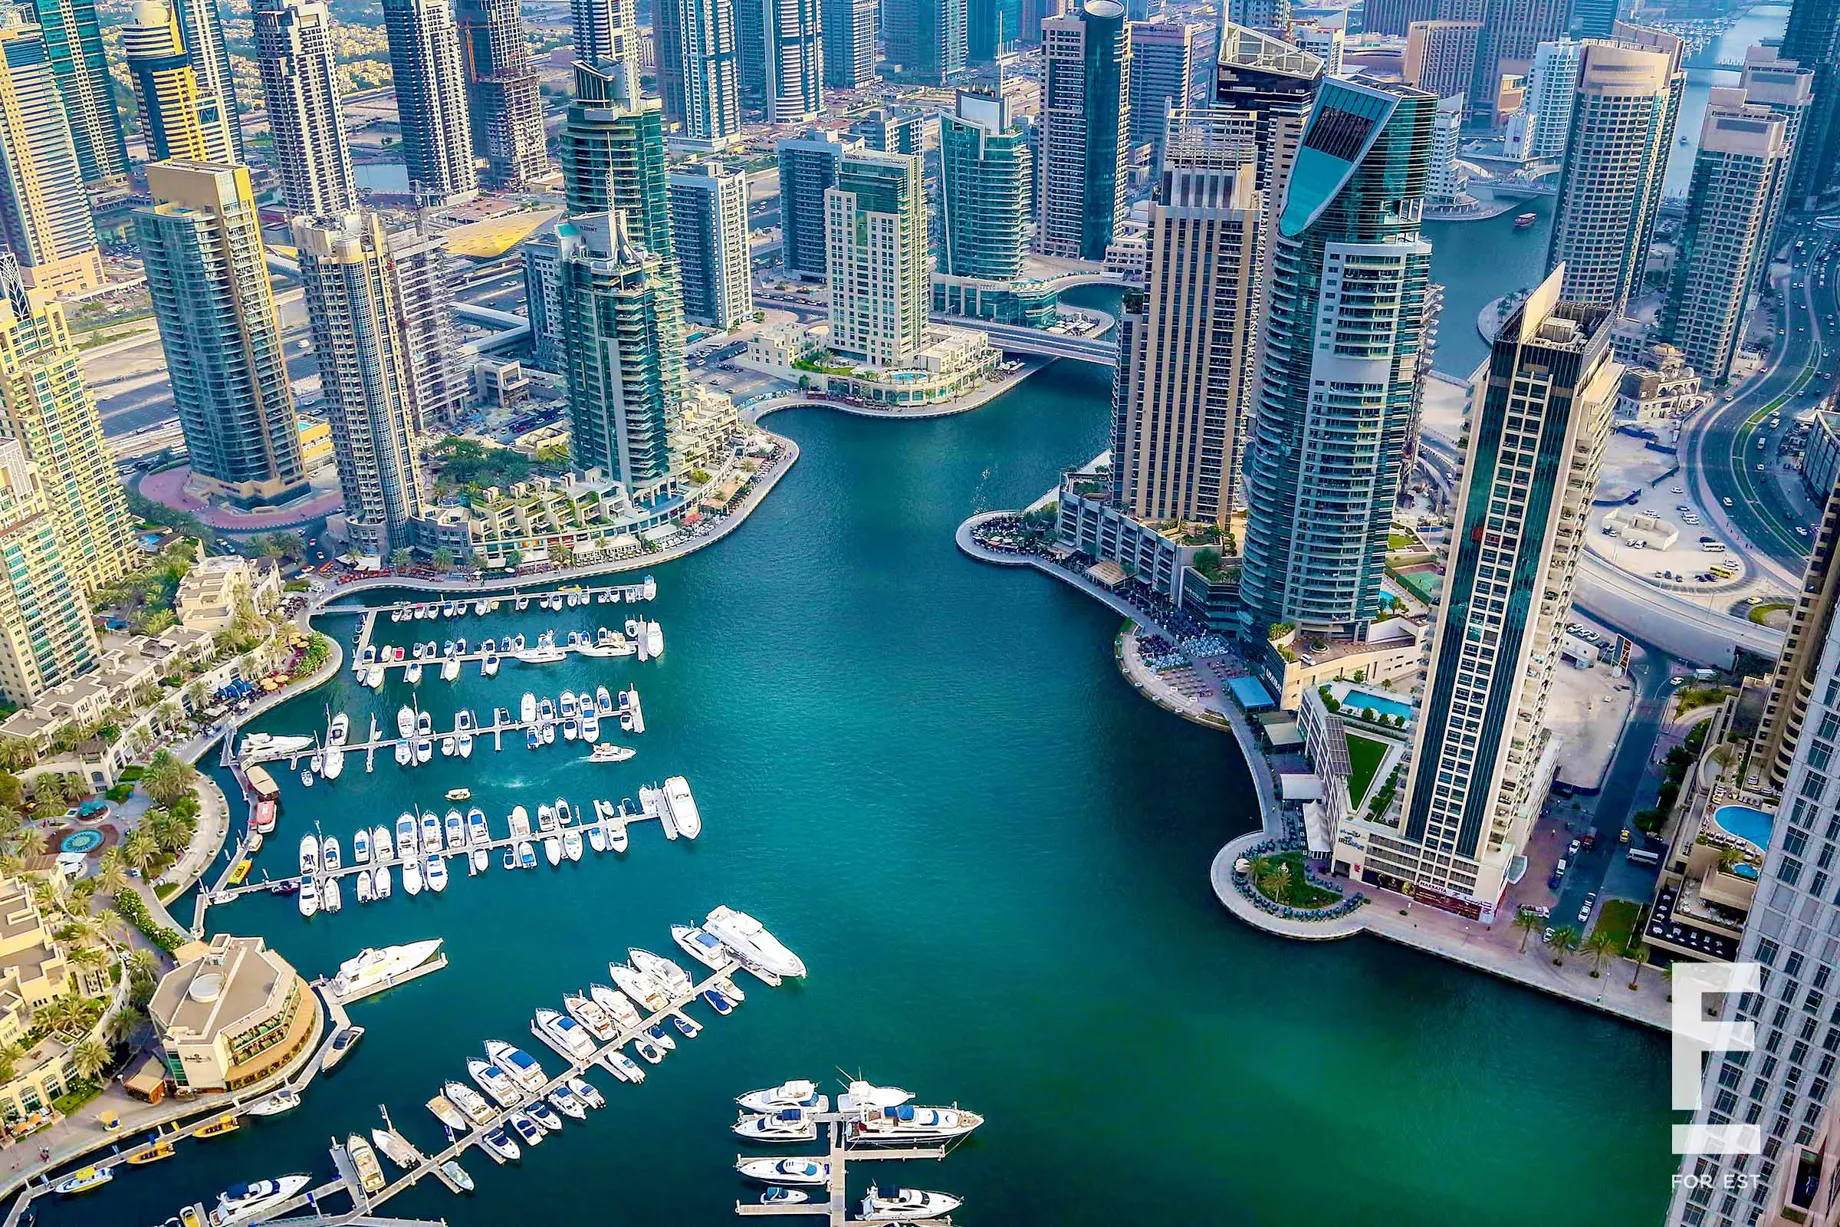 Дубай Марина - отличное место для шопинга, с множеством роскошных торговых центров и бутиков, предлагающих товары от лучших мировых брендов.